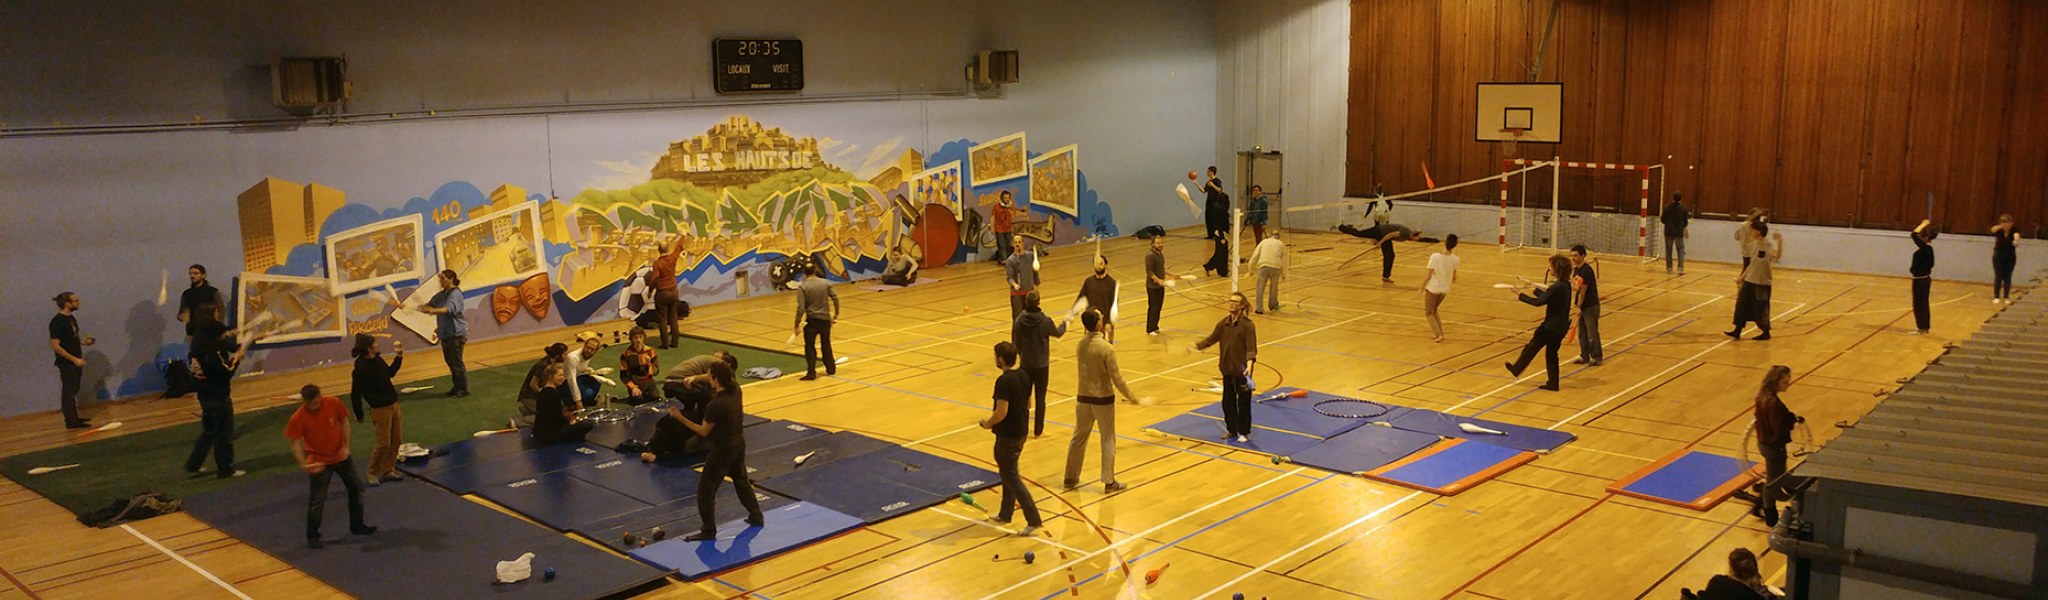 Atelier jonglage de l'APJ dans le gymnase de la MJC les Hauts de Belleville